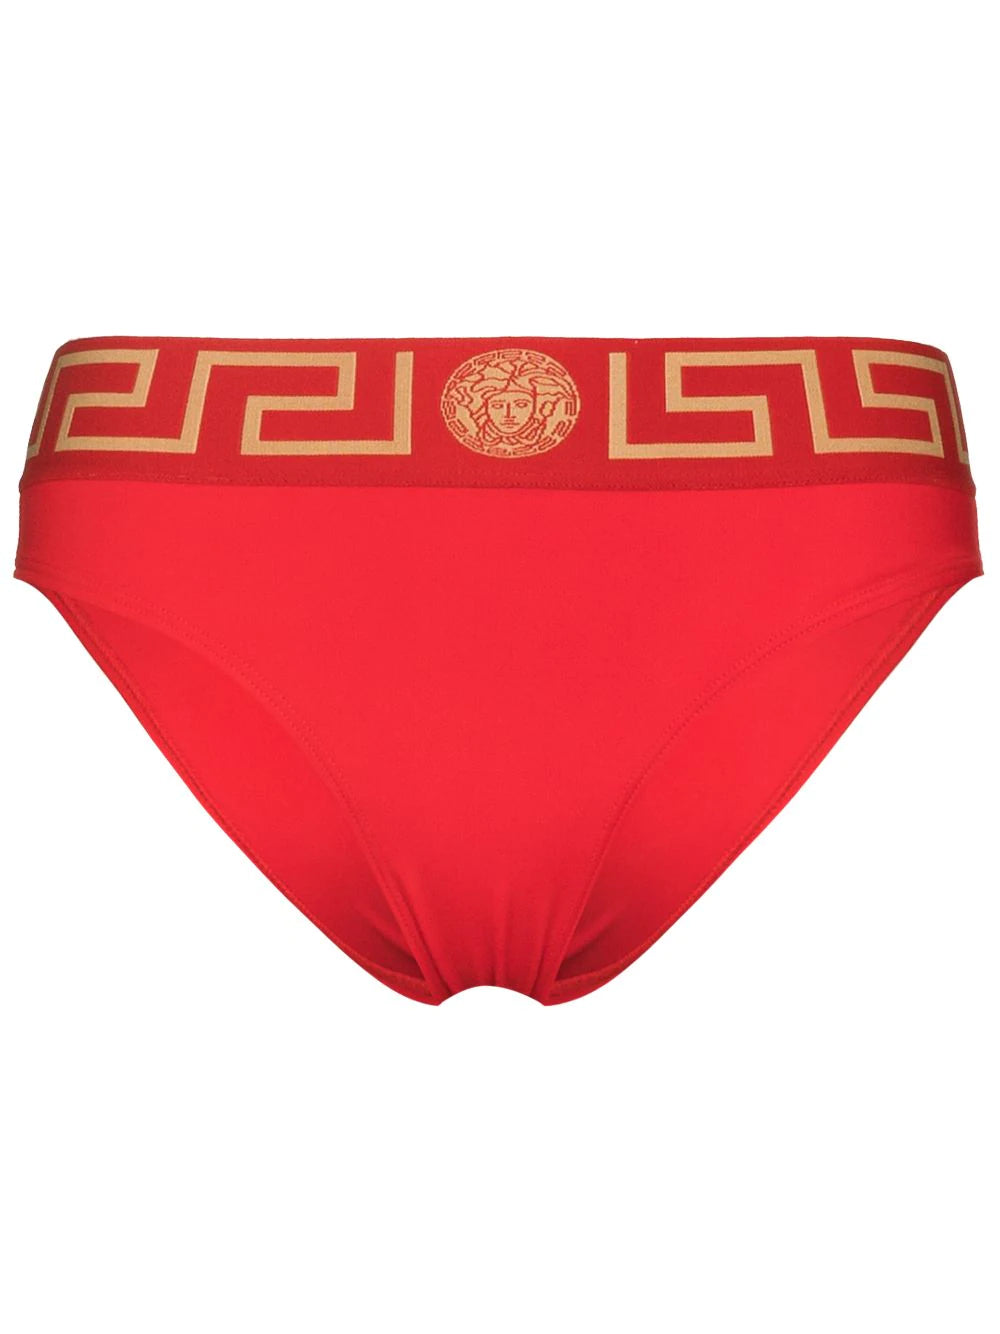 Versace Red Greek Key Swim Bikini Bottom